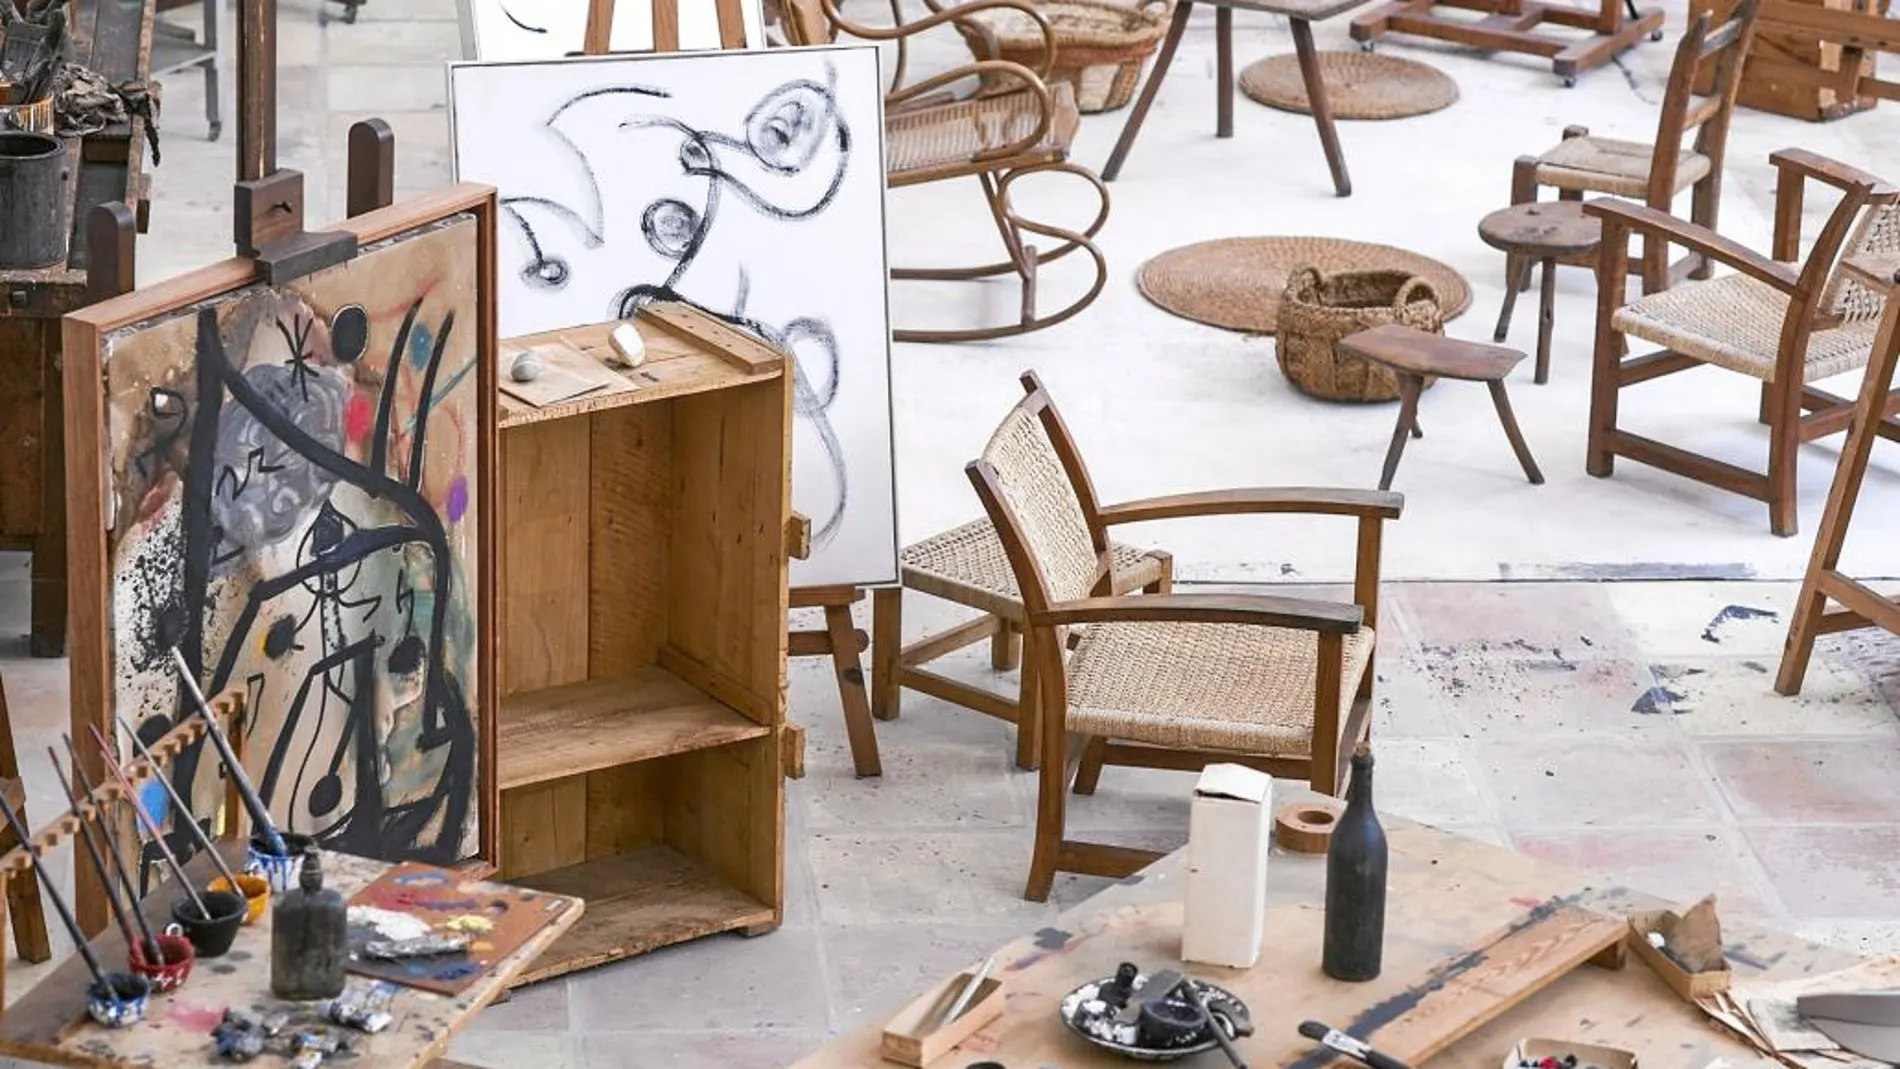 Vista del estudio de Miró, con todos sus cuadros, sillas y lienzos, pero sin la presencia del pintor